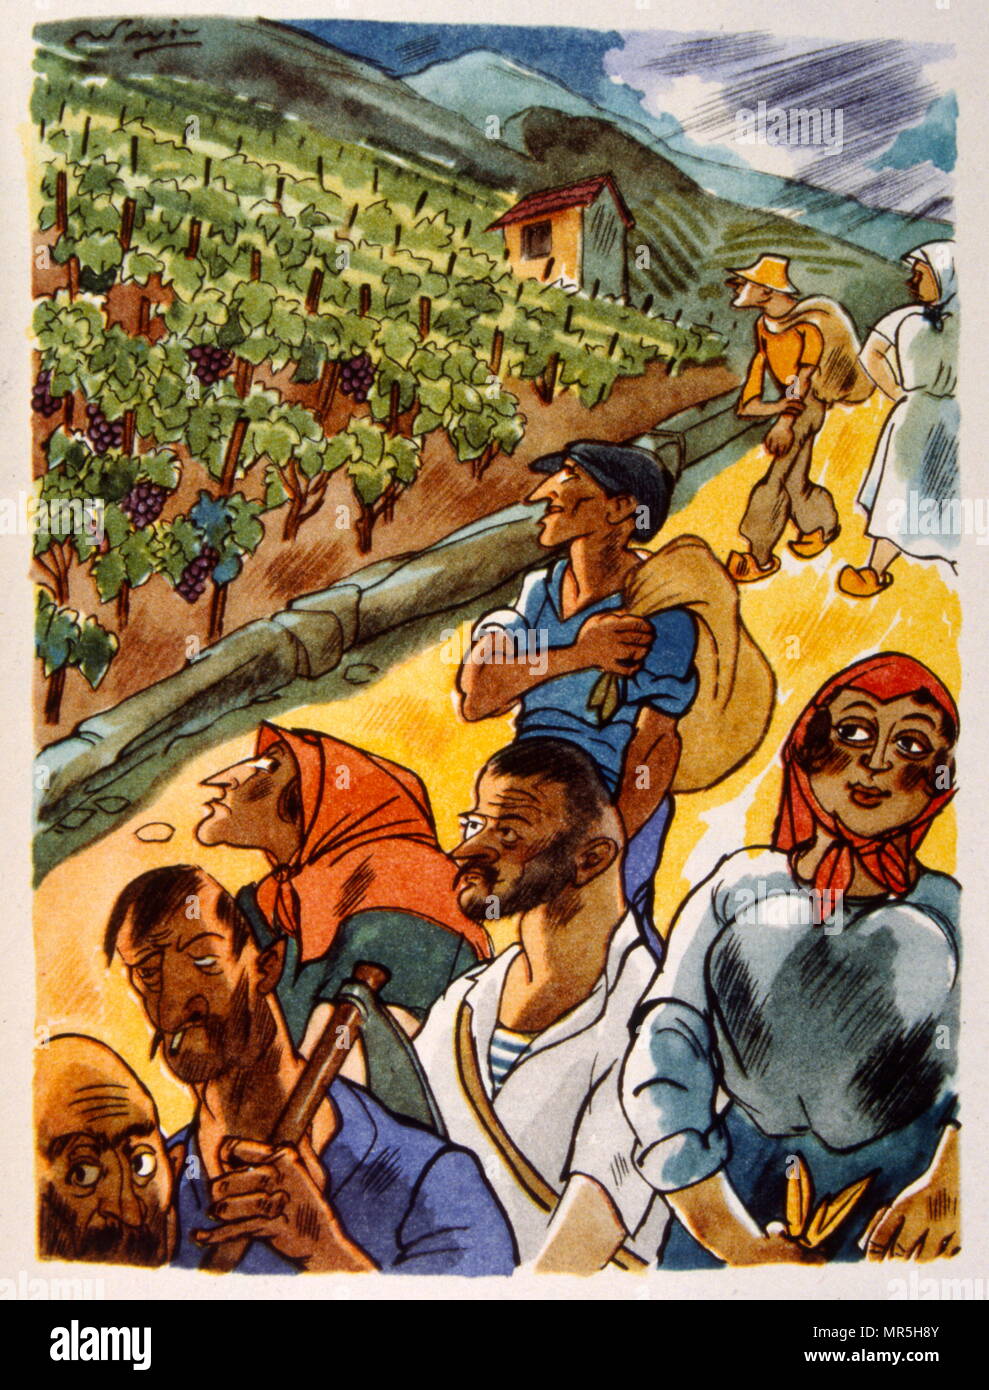 Französische Weinberg, 1944, Illustration von Julien Pavil, (1895-1952), französischer 20. Jahrhundert Illustrator, Humorist und Poster Artist. Er illustrierte mehrere Bücher zwischen 1929 und 1945. Stockfoto